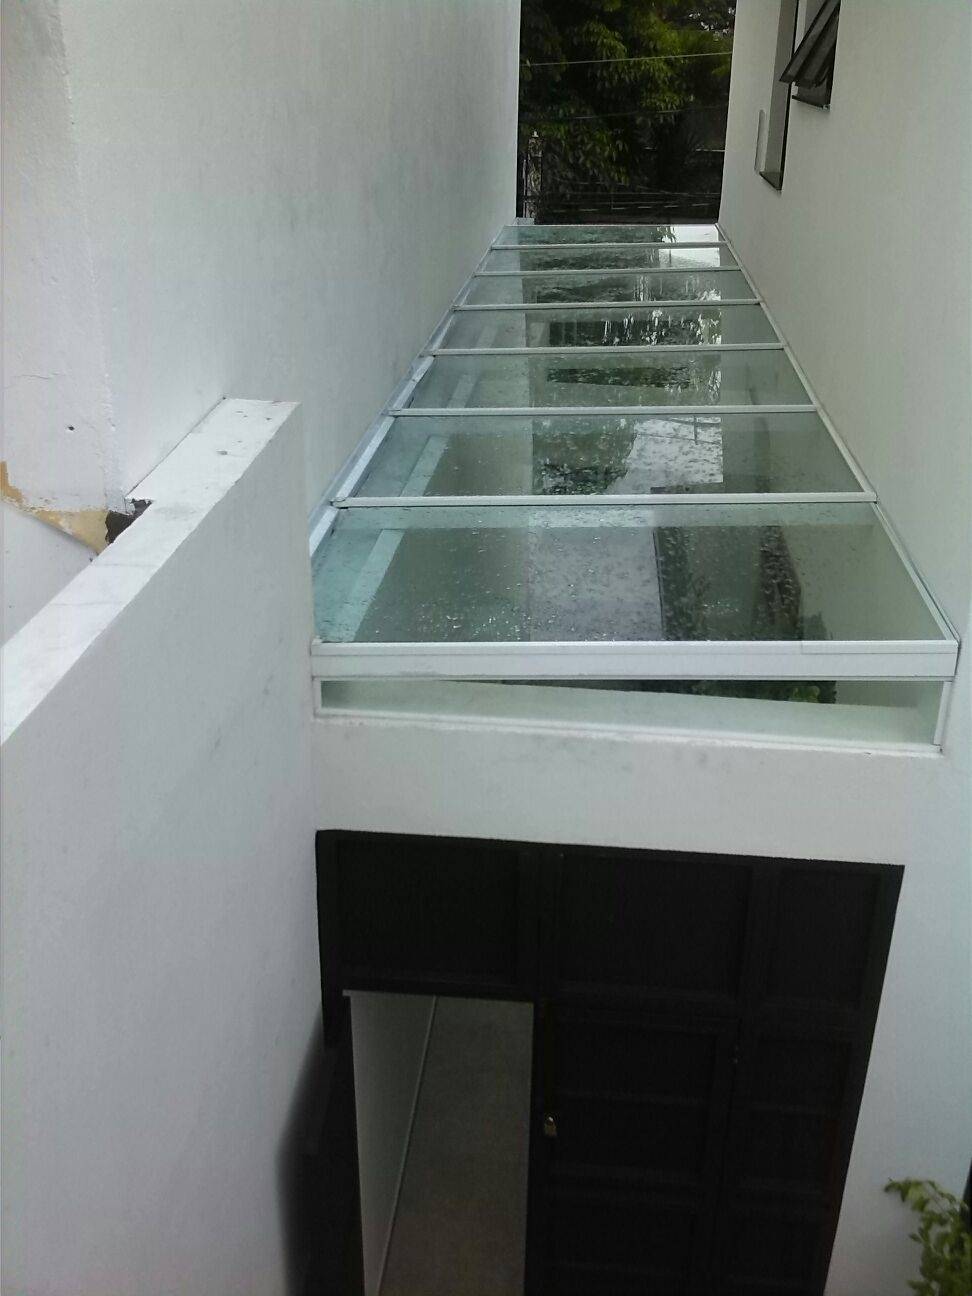 Cobertura de Vidro para Corredor Preço no Jardim São Luiz - Cobertura de Vidro para Porta